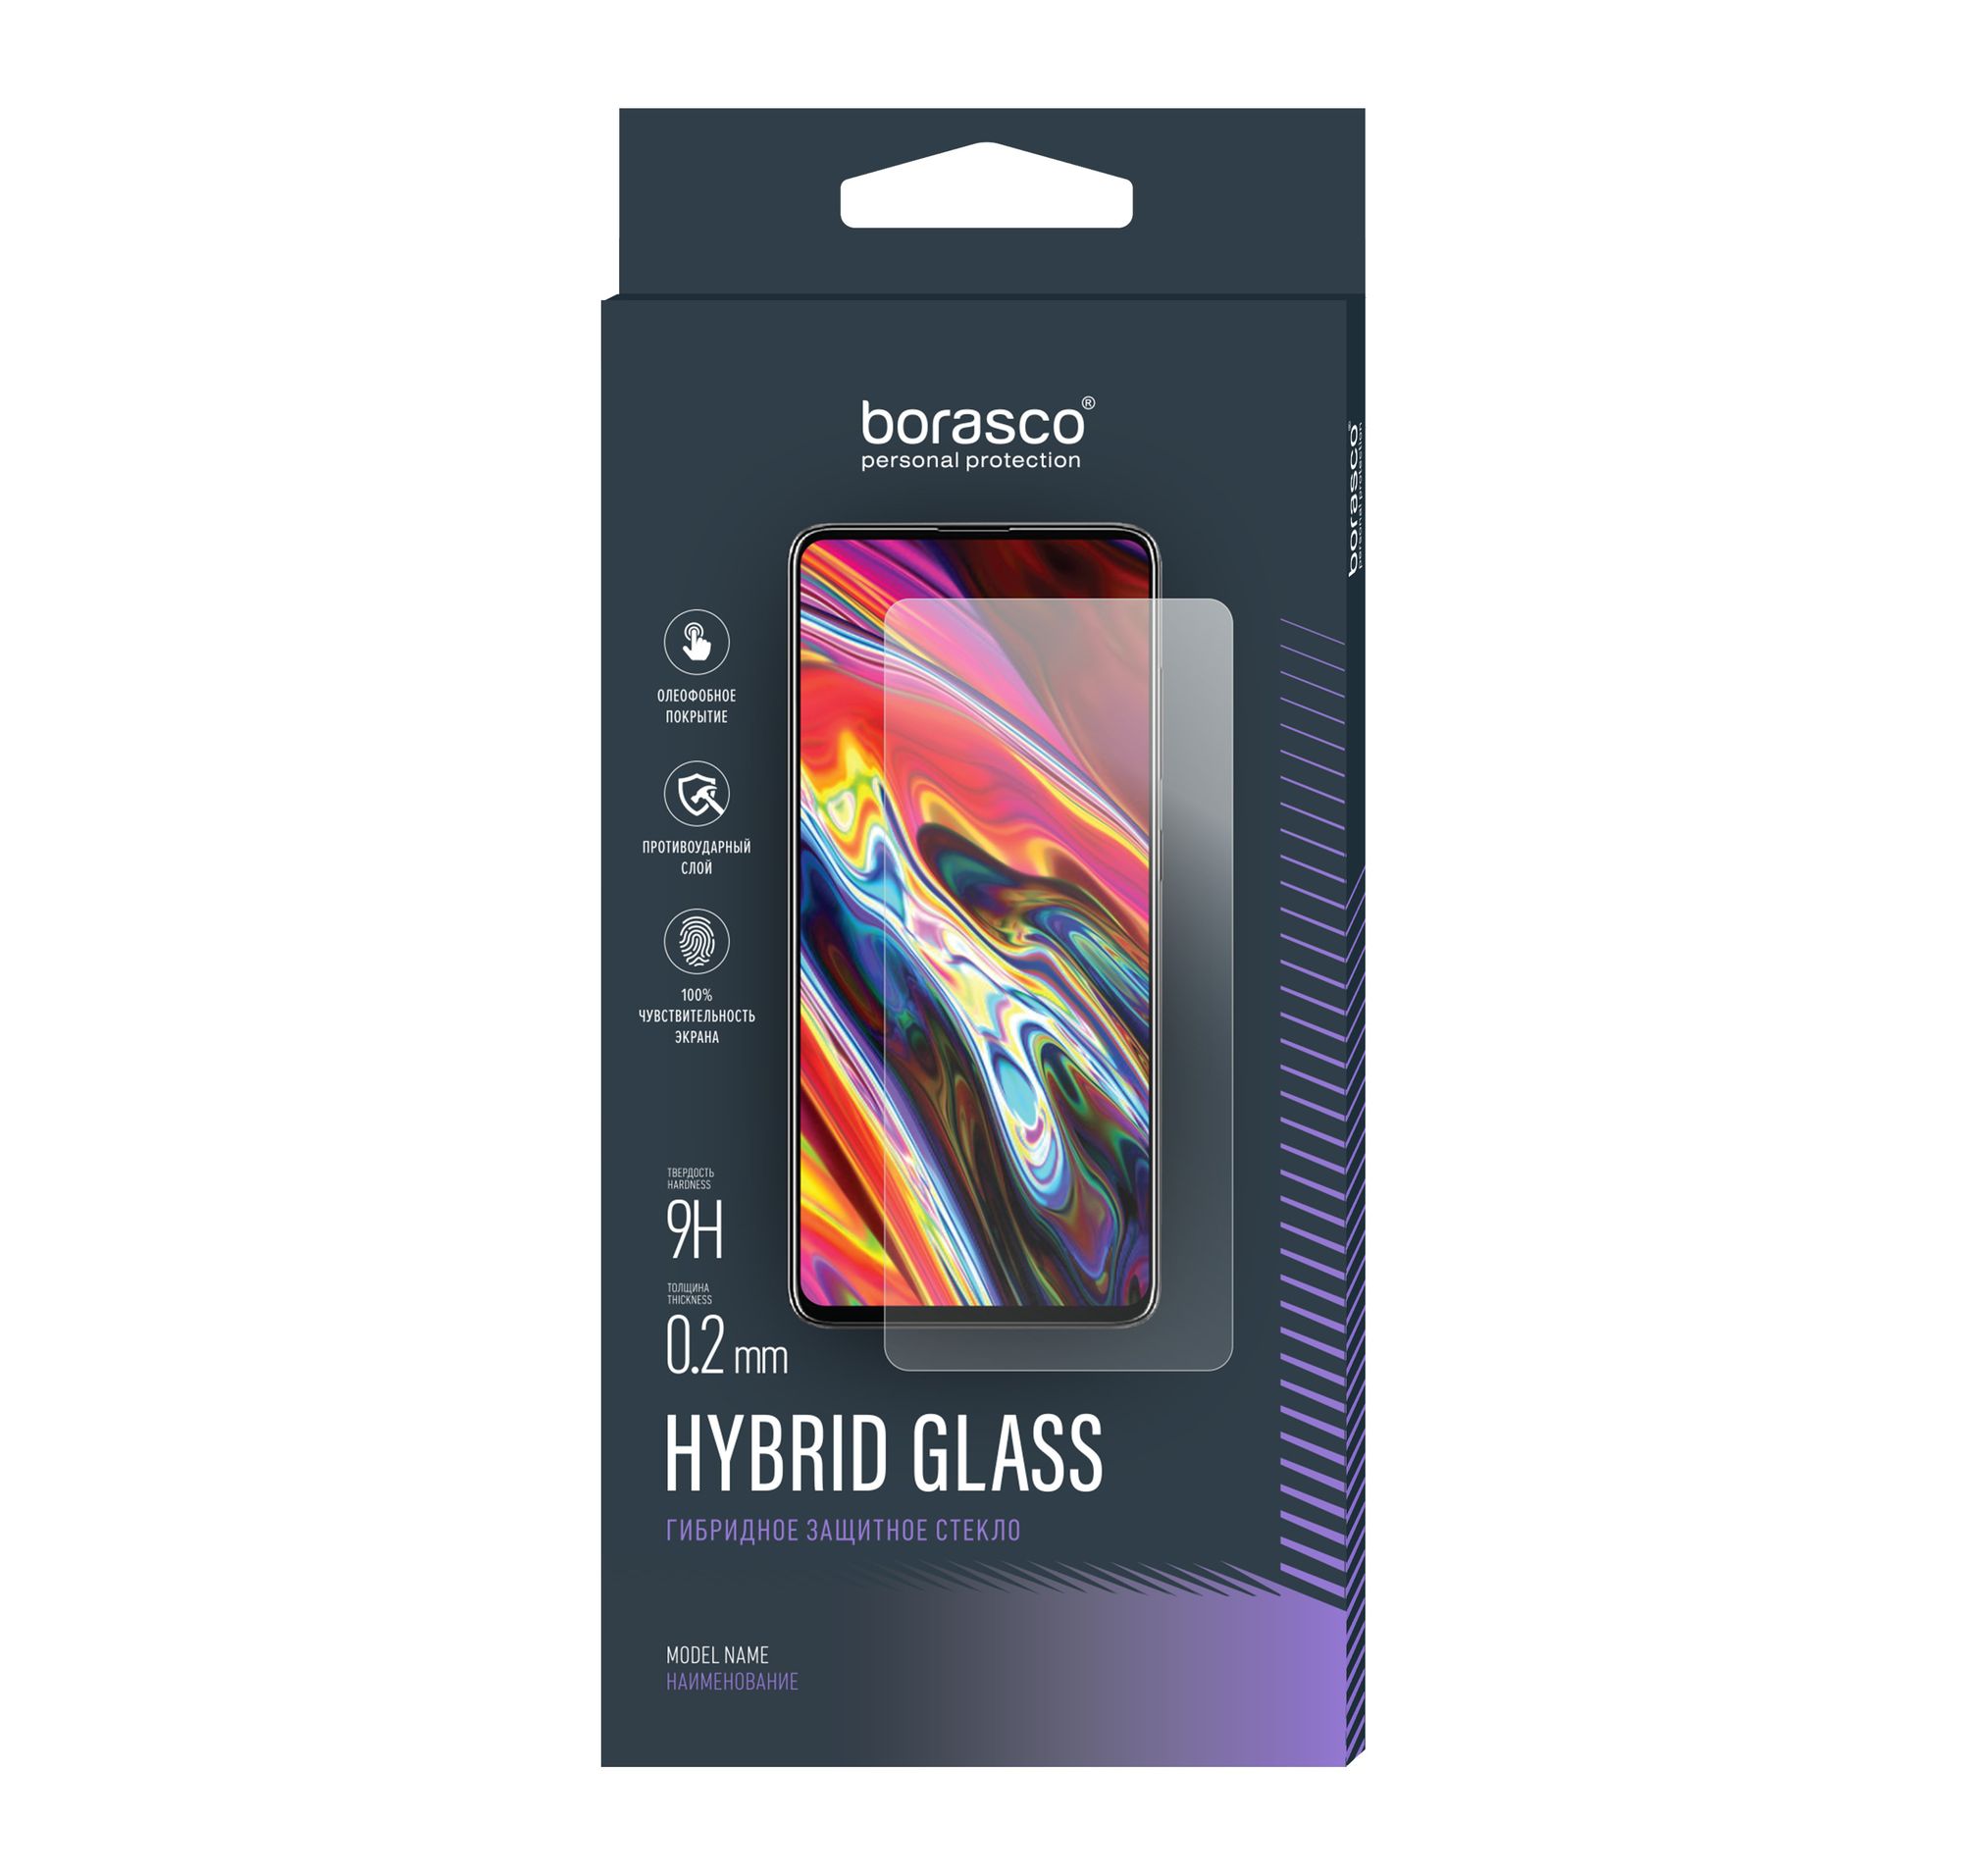 Стекло защитное Hybrid Glass VSP 0,26 мм для Samsung Galaxy A9 2018 защитное стекло для samsung galaxy a9 2018 года самсунг галакси а9 2018 прозрачное закалённое стекло rosco с олеофобным покрытием противоударное